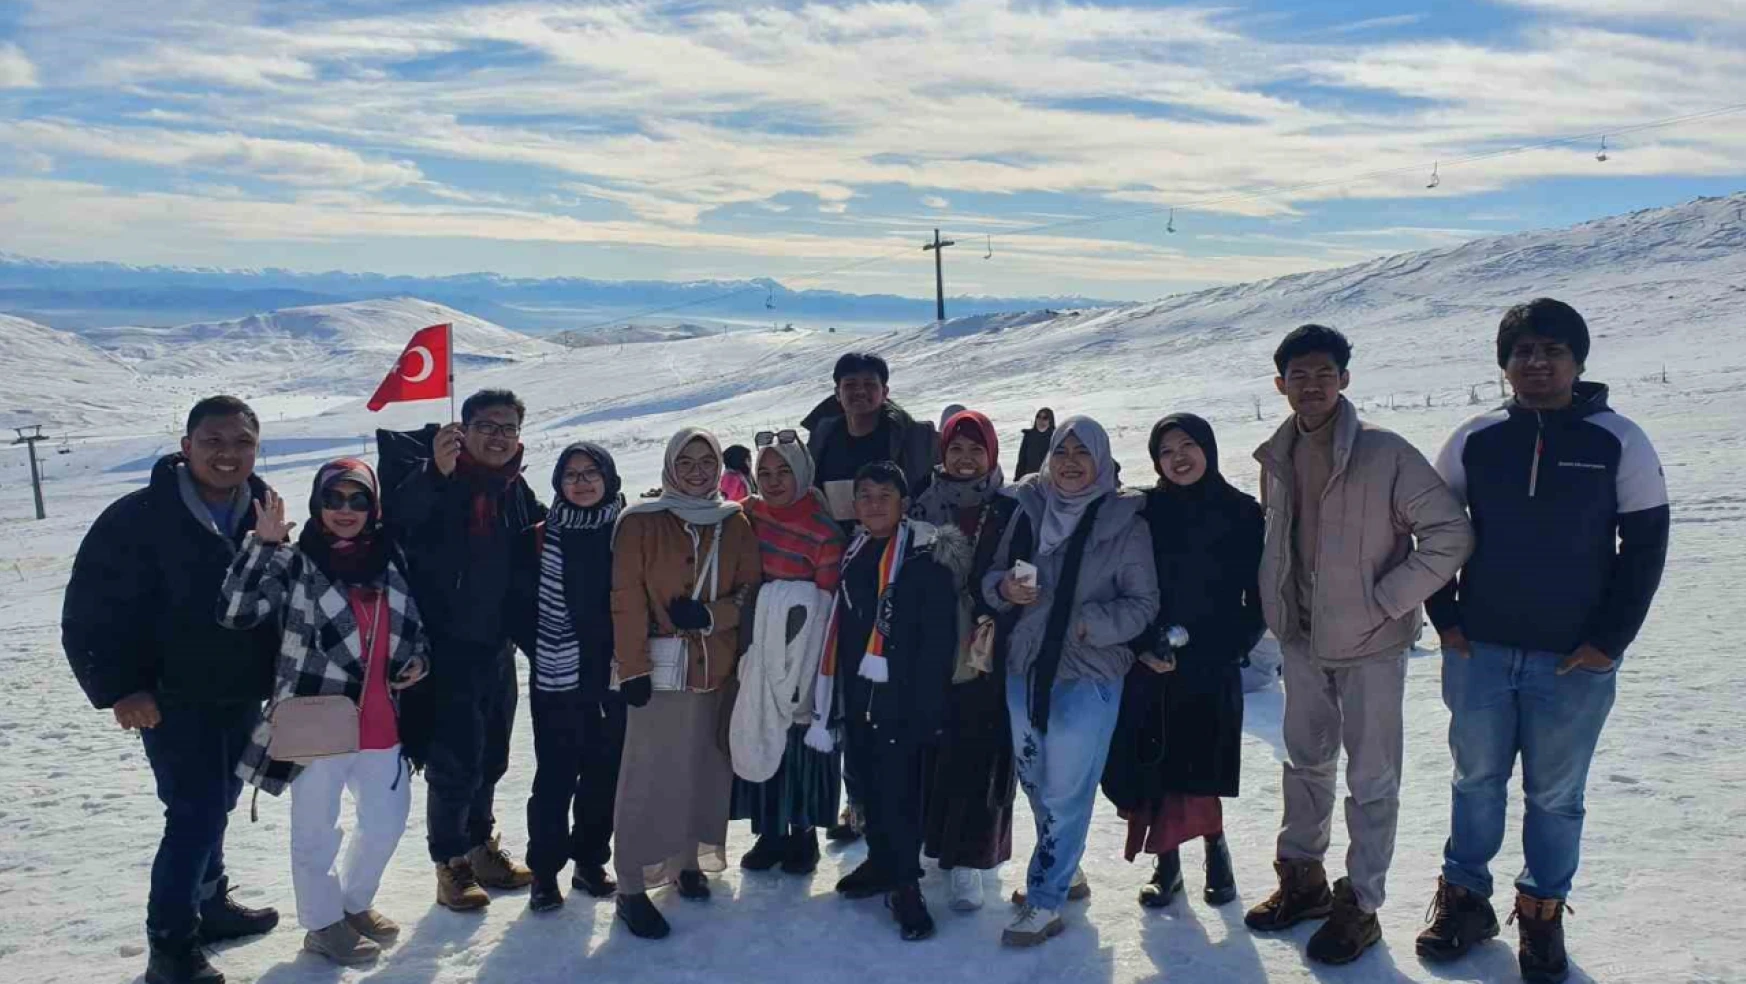 9 bin 87 kilometre uzaklıktan gelen Endonezyalı turistler Erciyes'e hayran kaldı